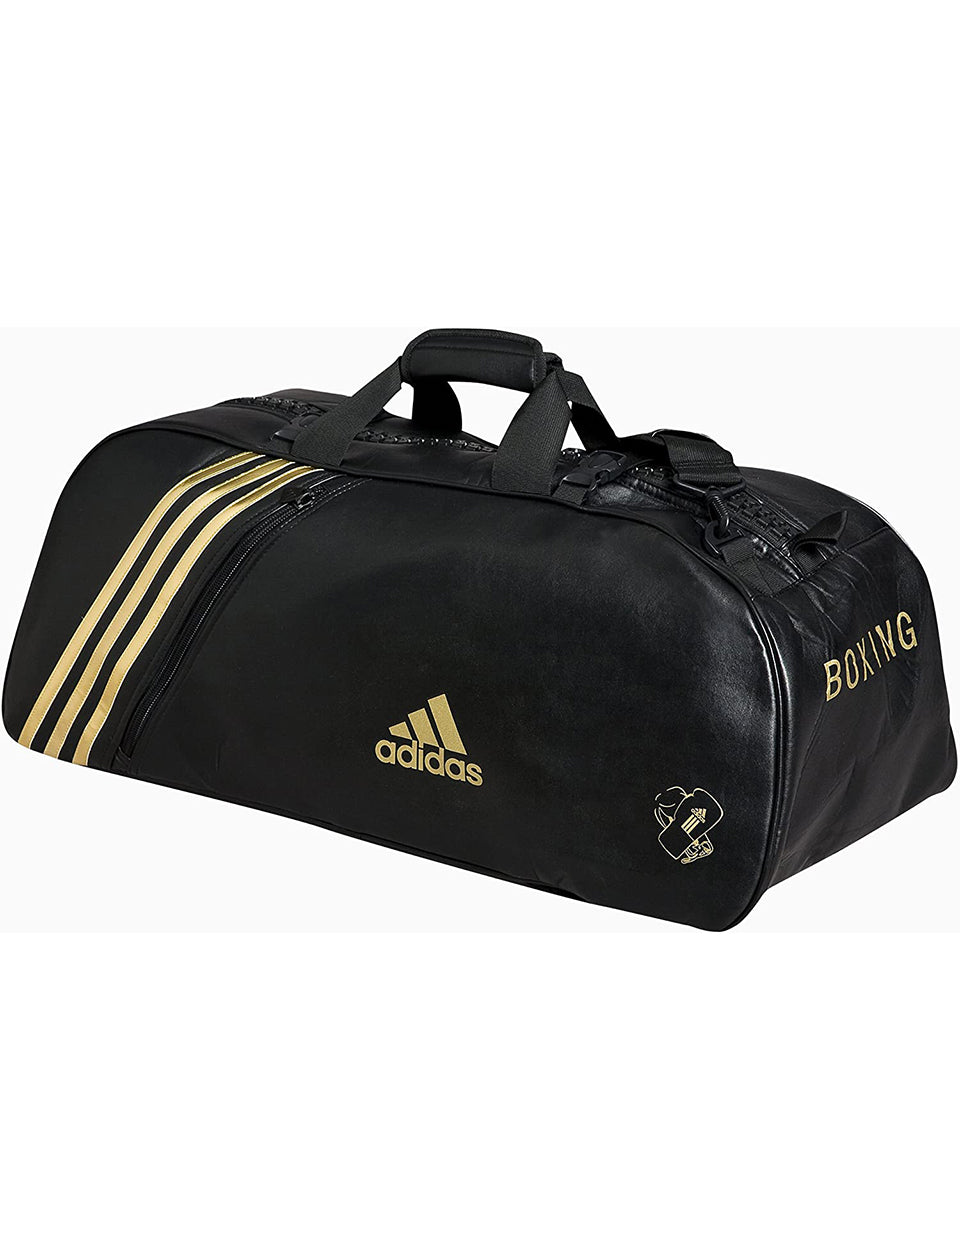 Adidas Super Sport Bag, Black, Large